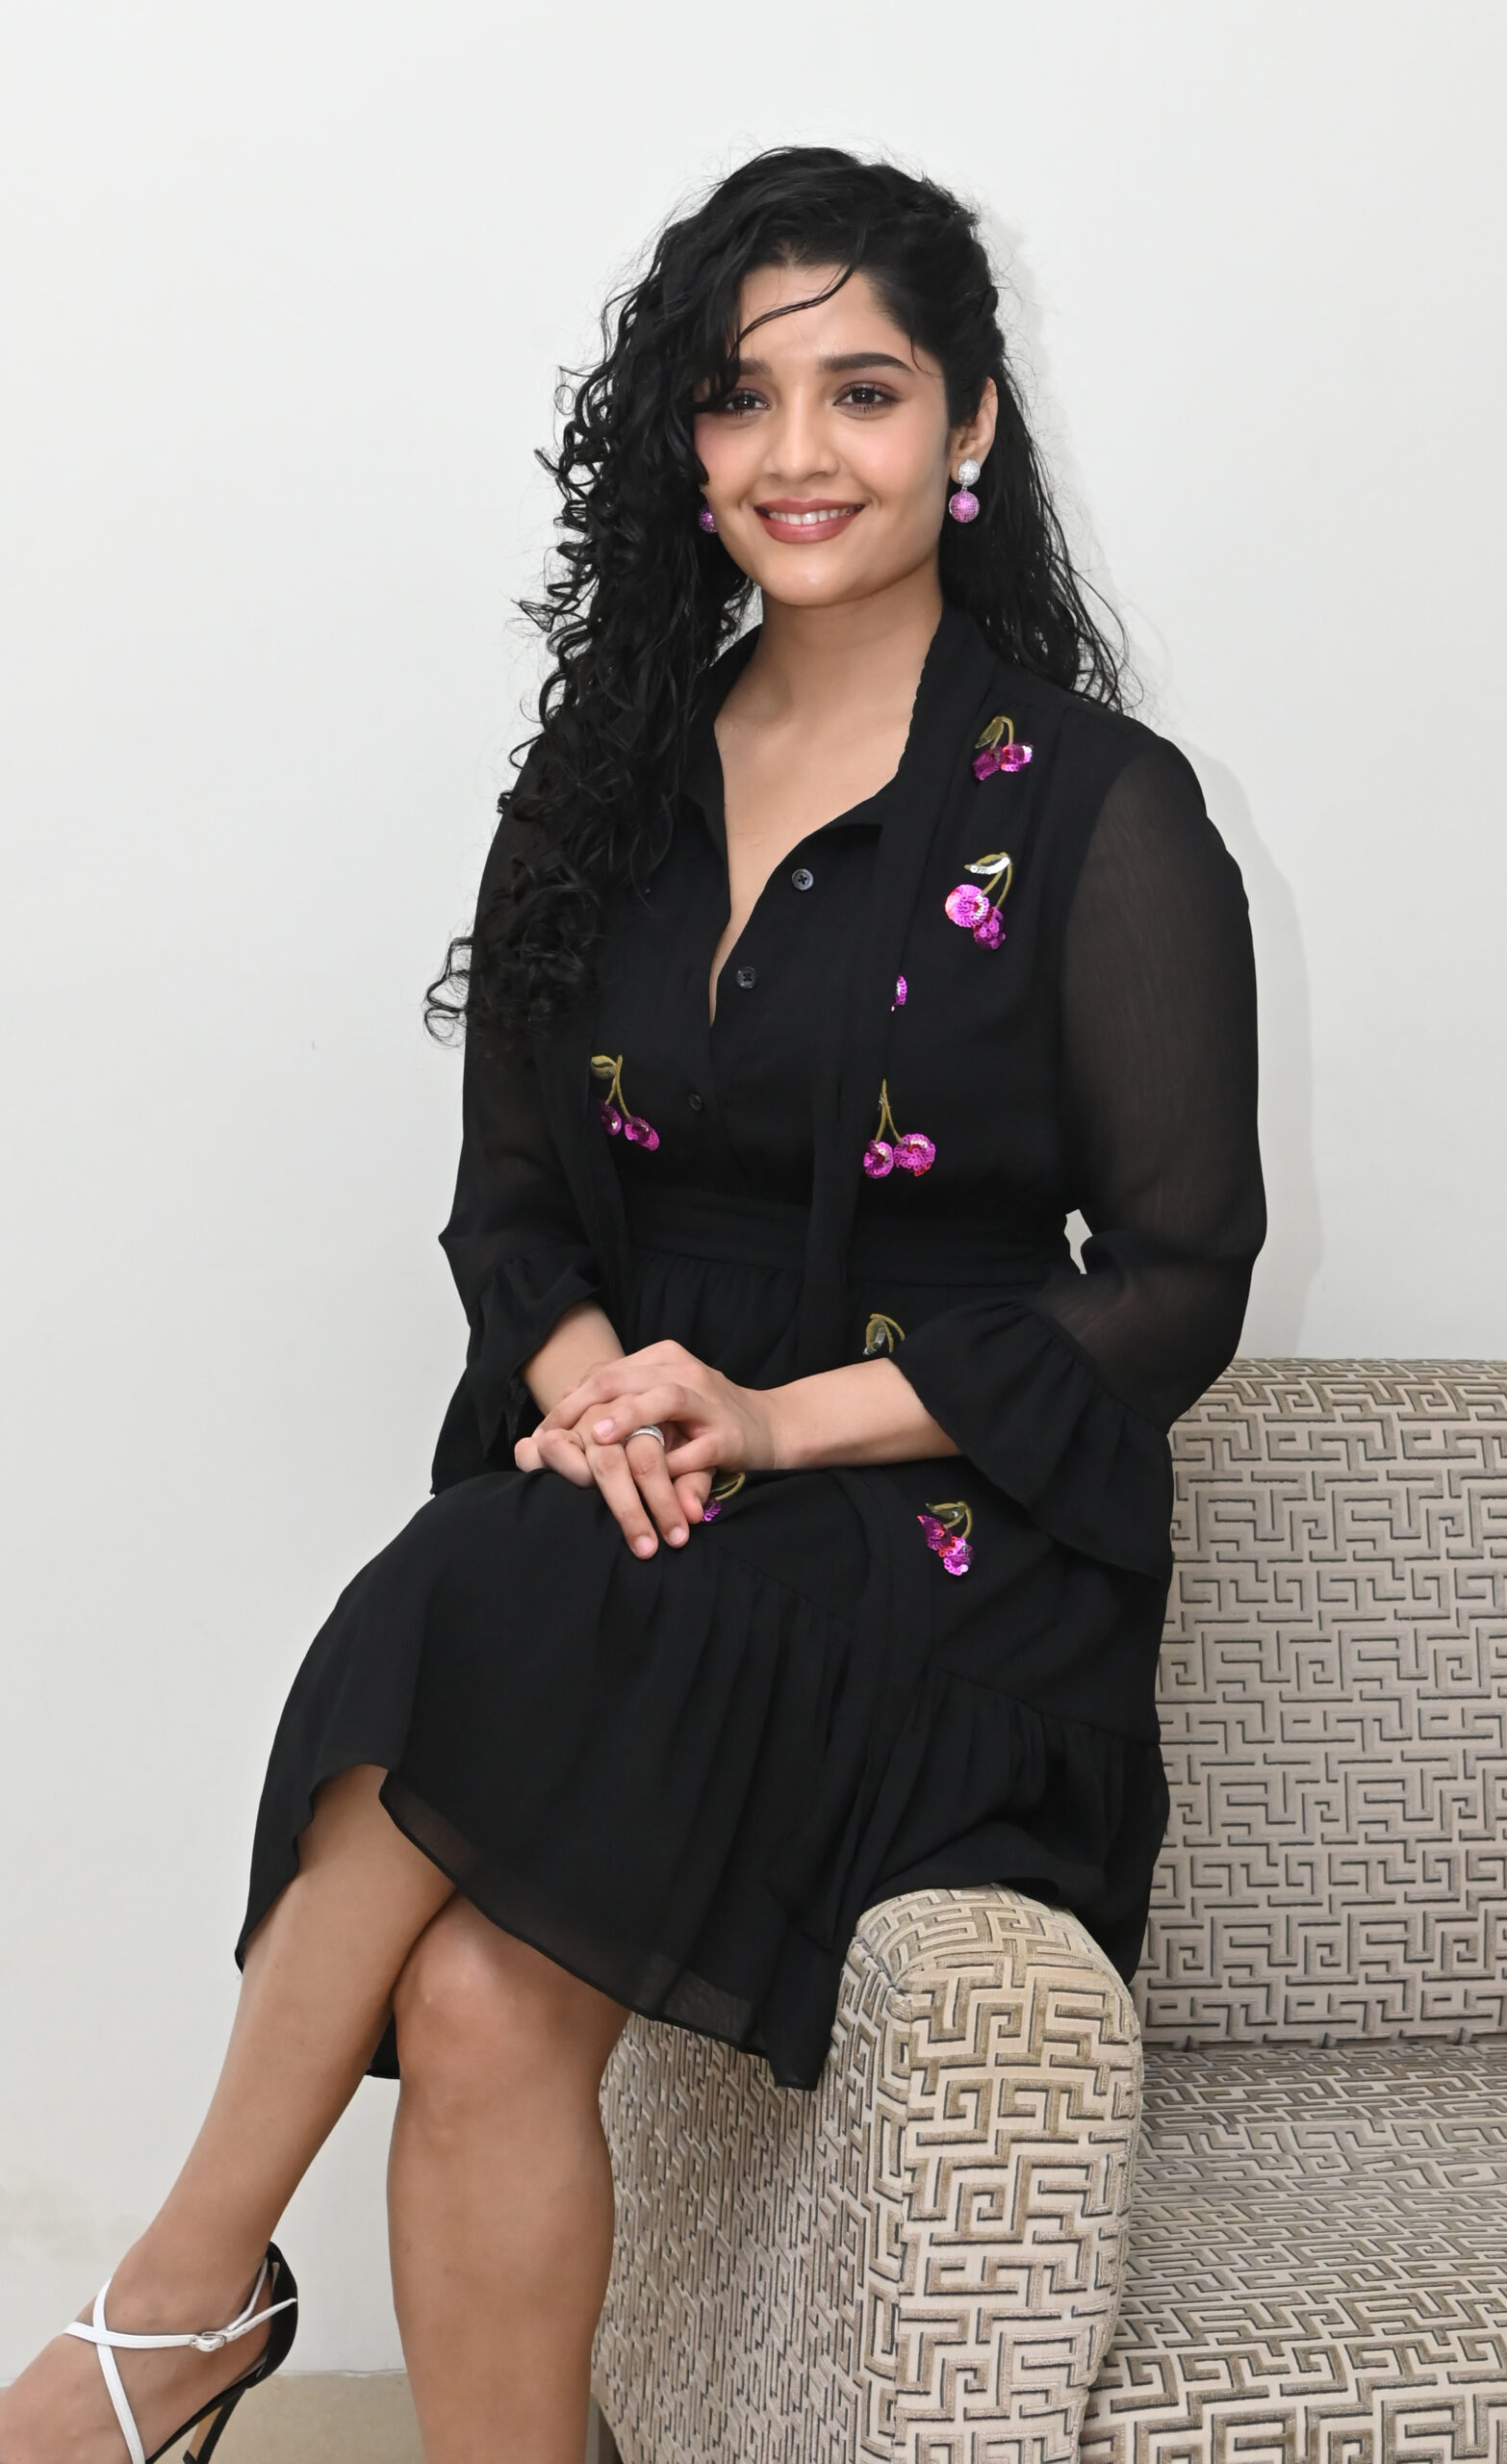 రితిక సింగ్‌ ప్రధాన పాత్రలో నటించిన చిత్రం ‘ఇన్‌ కార్‌'. ఈ చిత్రానికి కెమెరా: మిథున్‌ గంగోపాధ్యాయ, రచన-దర్శకత్వం: హర్షవర్దన్‌. (Ritika Singh at InCar Movie Press Meet)